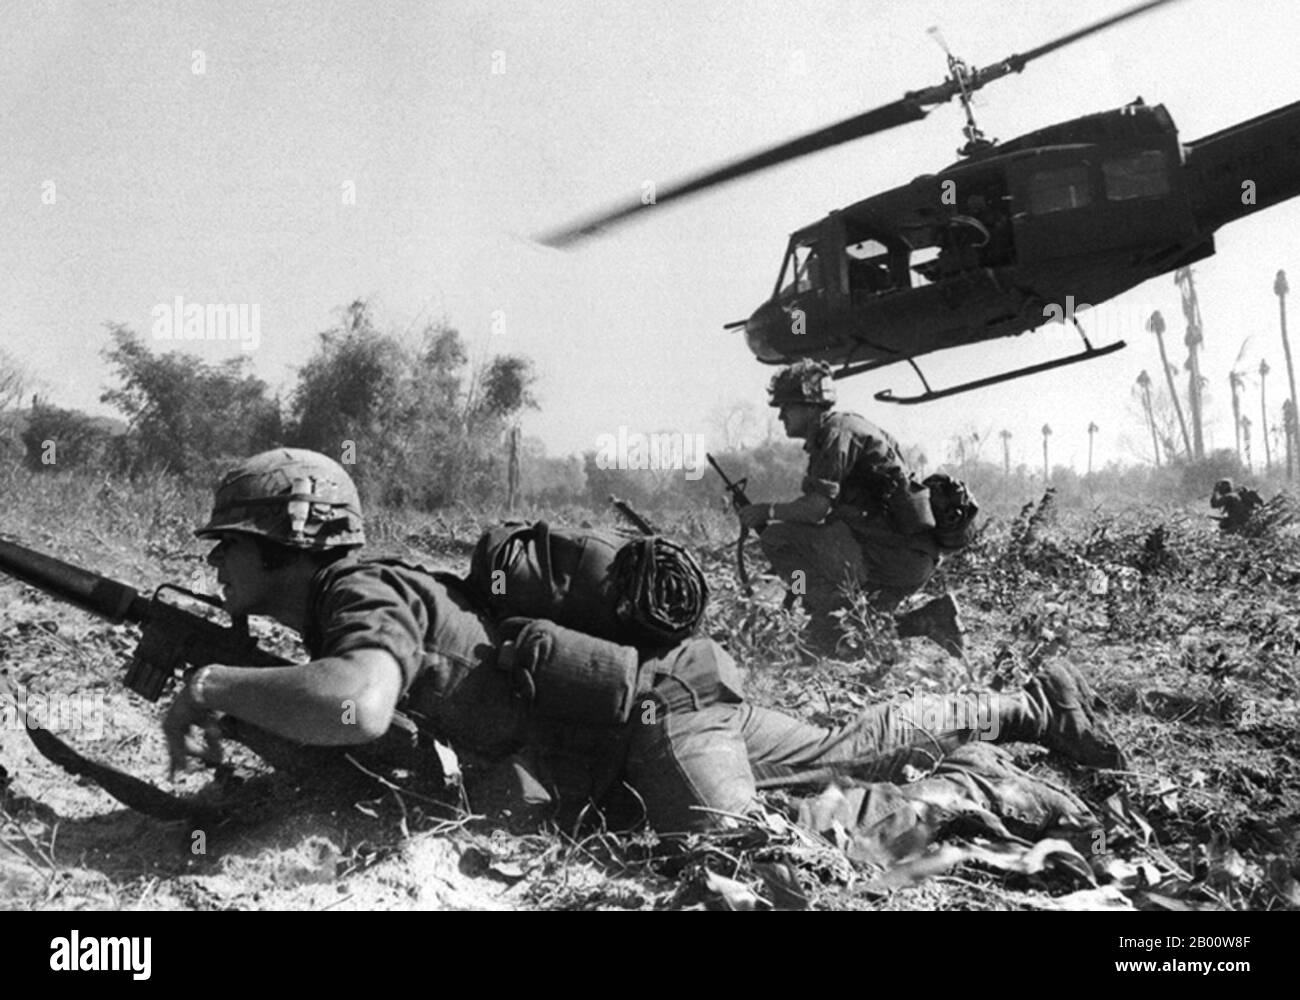 Vietnam: Forze USA sostenute da UH-1D Huey elicottero in azione da qualche parte in Sud Vietnam, c.. 1966. La seconda guerra dell'Indocina, nota in America come guerra del Vietnam, fu un conflitto militare dell'epoca della Guerra fredda che si verificò in Vietnam, Laos e Cambogia dal 1° novembre 1955 alla caduta di Saigon il 30 aprile 1975. Questa guerra seguì la prima guerra dell'Indocina e fu combattuta tra il Vietnam del Nord, sostenuto dai suoi alleati comunisti, e il governo del Vietnam del Sud, sostenuto dagli Stati Uniti e da altre nazioni anticomuniste. Foto Stock